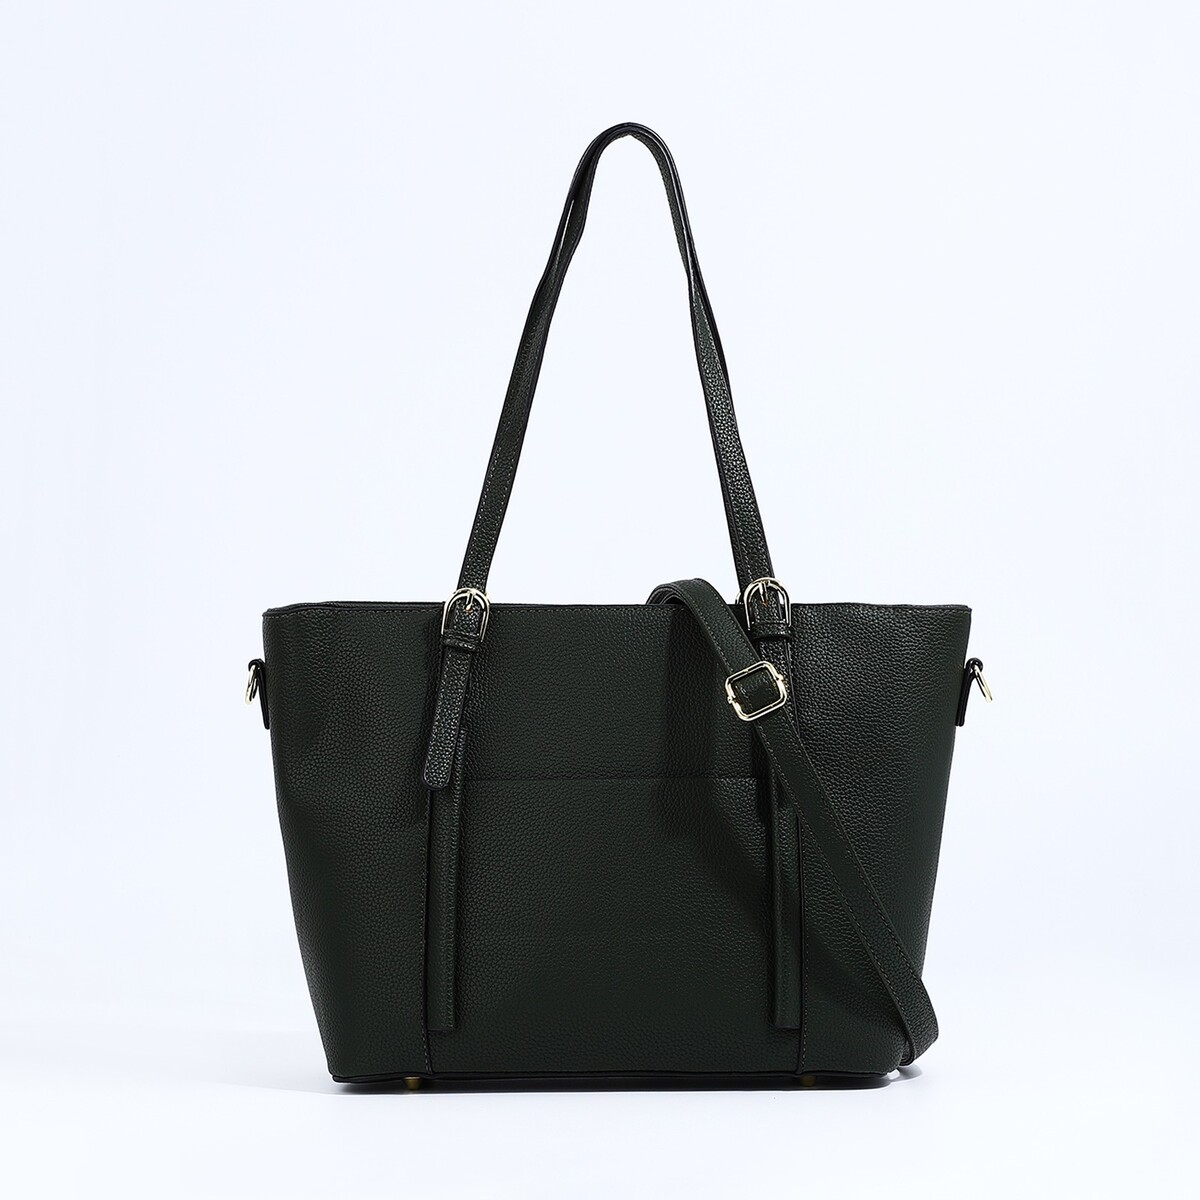 Сумка-шопер на молнии, цвет зеленый рюкзак на молнии шопер сумка пенал зеленый